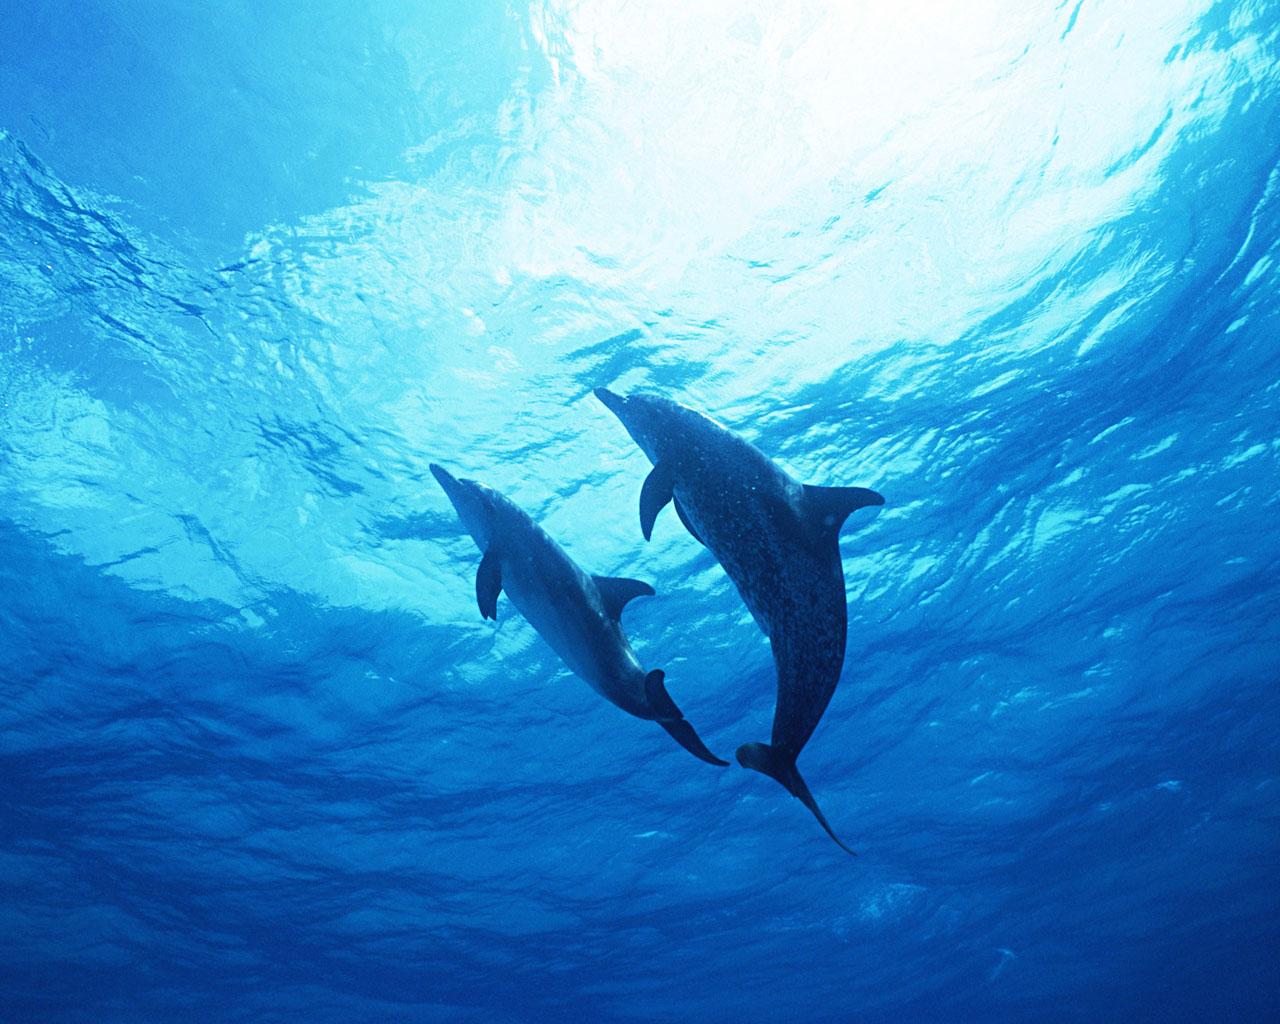 〓 高清晰蓝色漂亮海洋动物摄影壁纸-可爱的海豚::当前为类型:::欧莱凯图库素材酷图